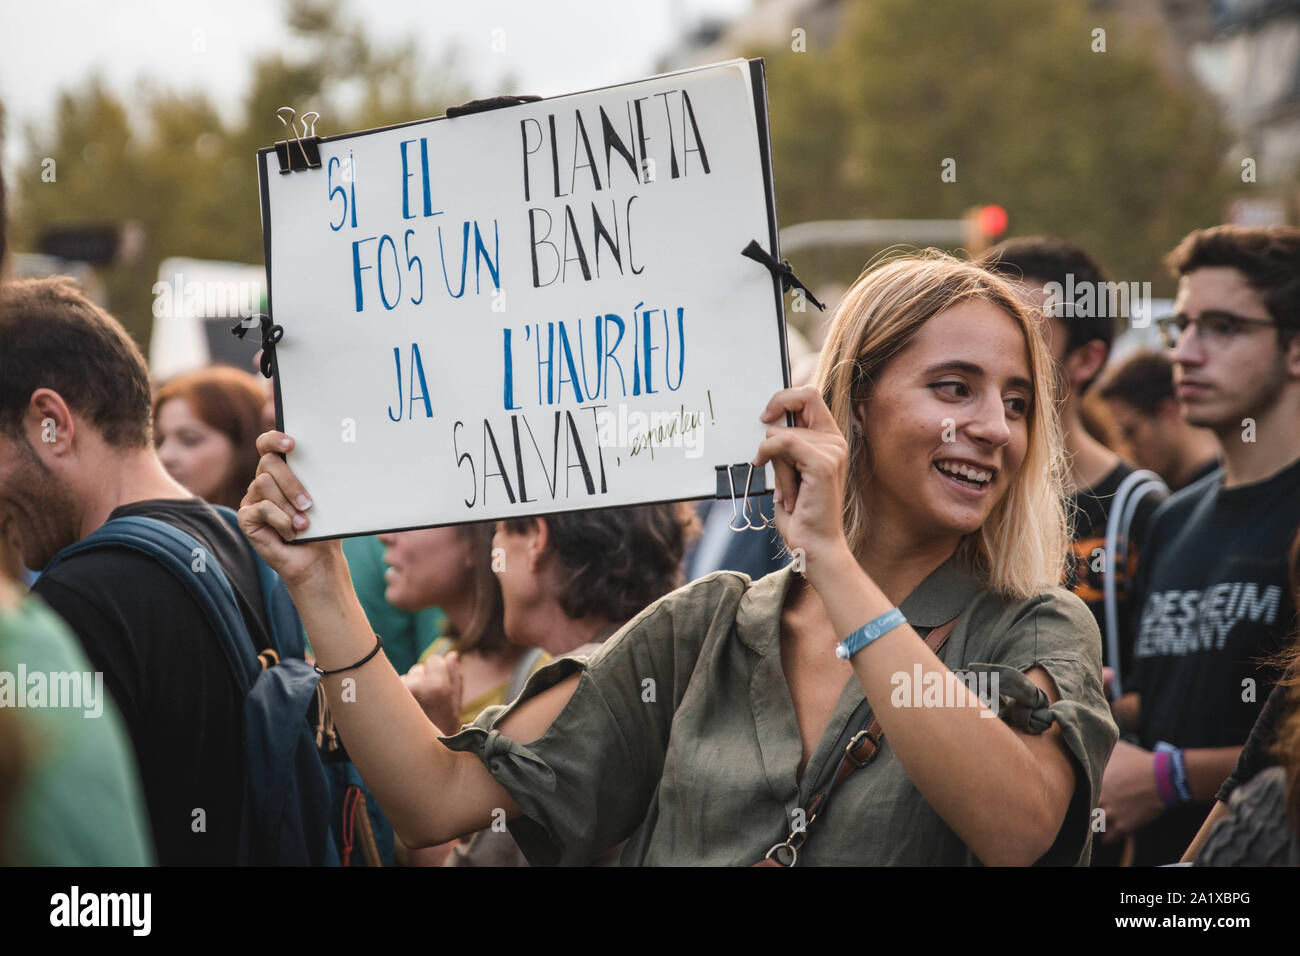 Unas 20.000 personas se manifestaron el pasado viernes 27 de Septiembre en contra de la inactividad de los gobiernos respeto al cambio climático. Stock Photo